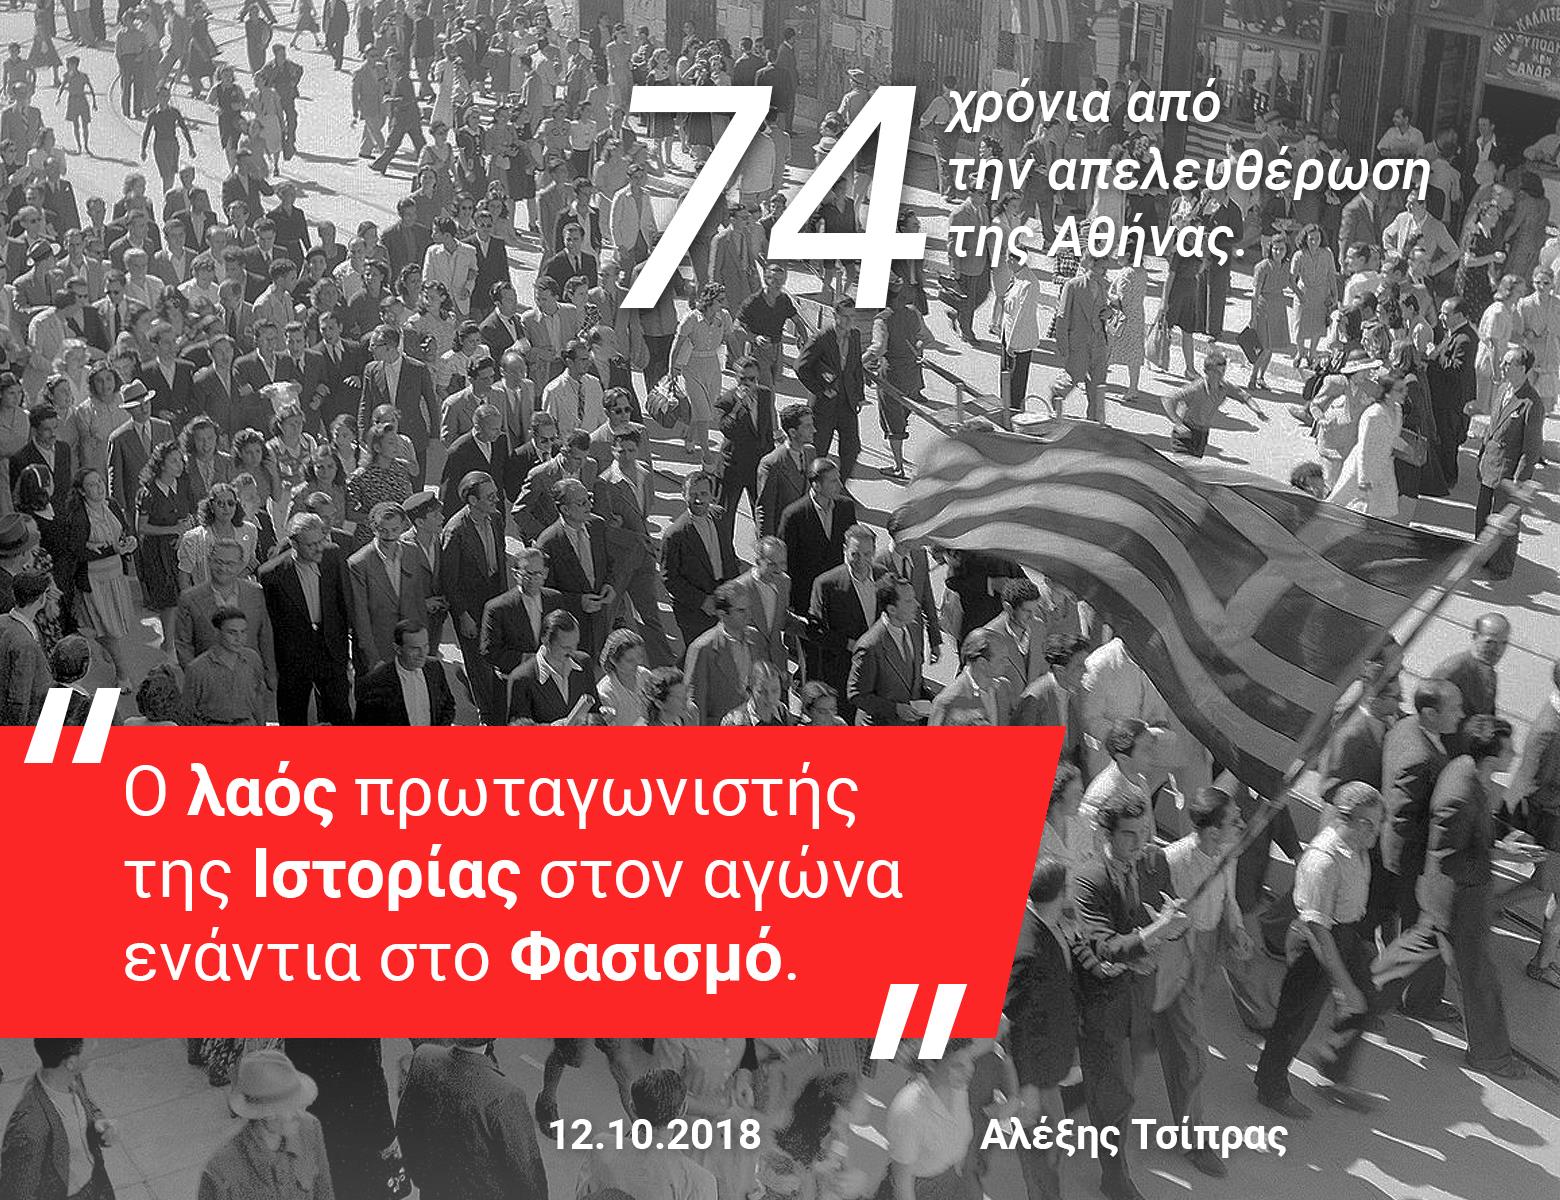 Το tweet του Α.Τσίπρα για την απελευθέρωση της Αθήνας από τους Γερμανούς με αναφορά  στις αποζημιώσεις